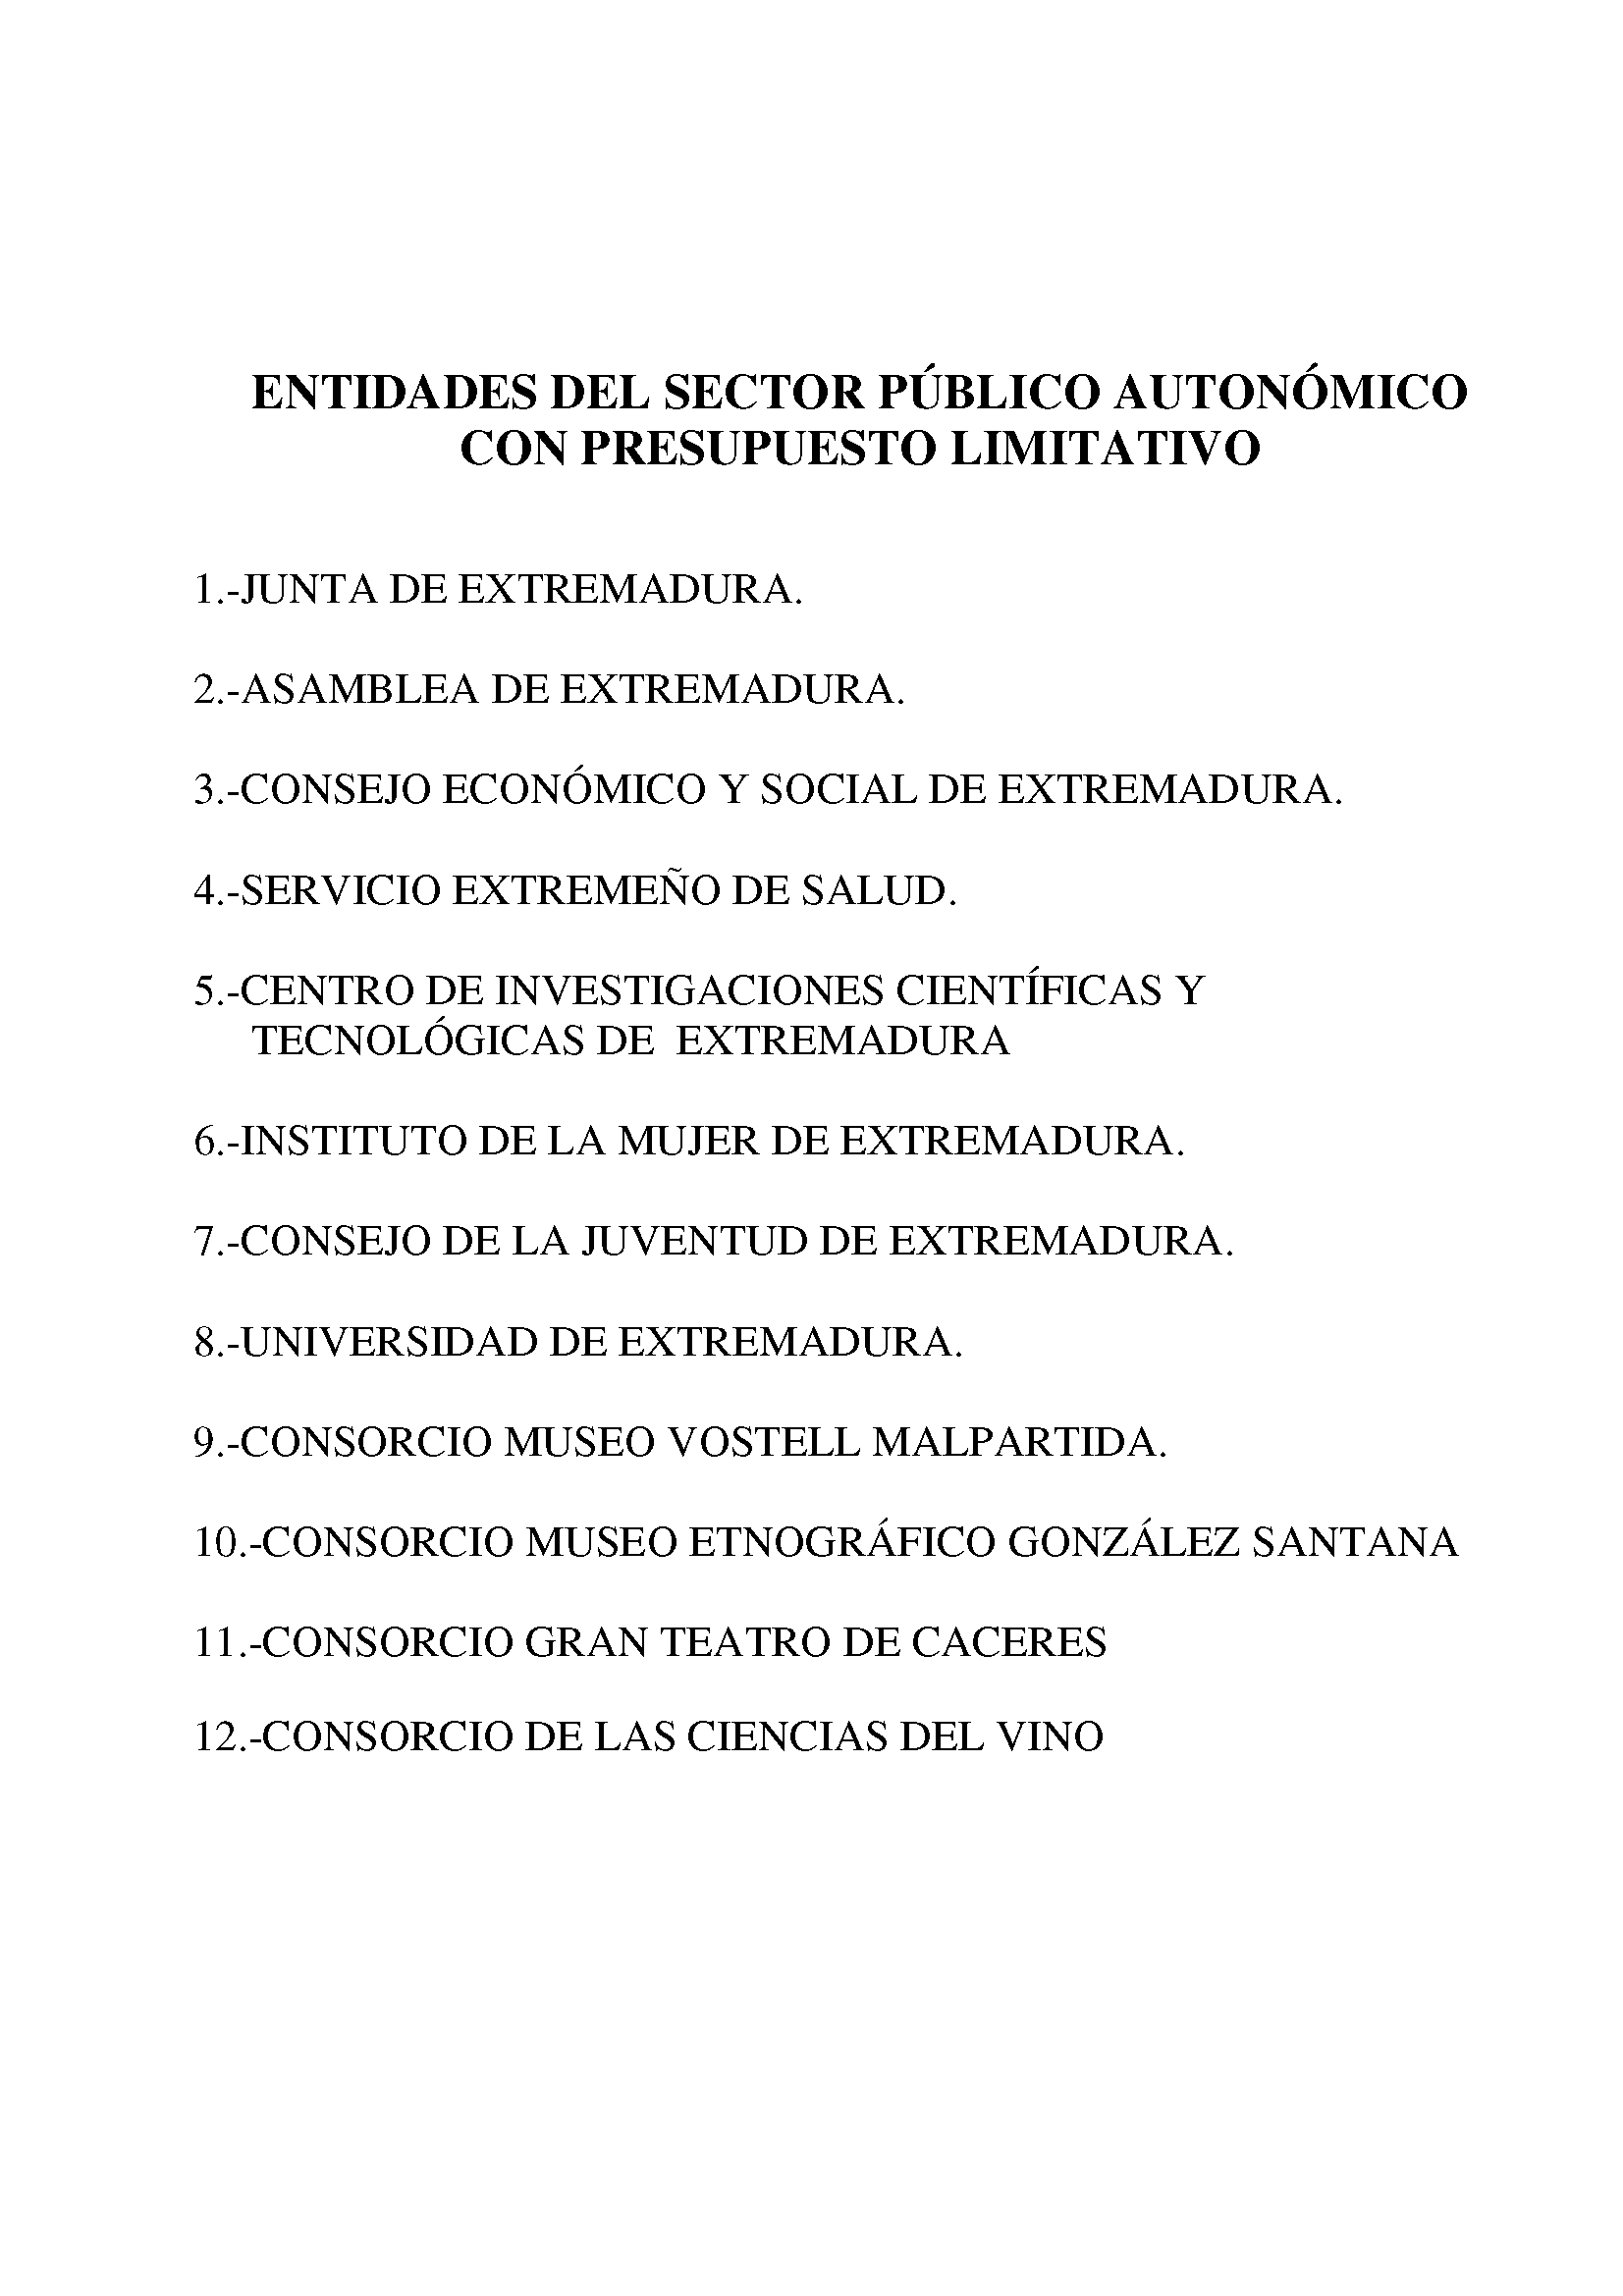 ENTIDADES DEL SECTOR PUBLICO AUTONOMICO Pag 1